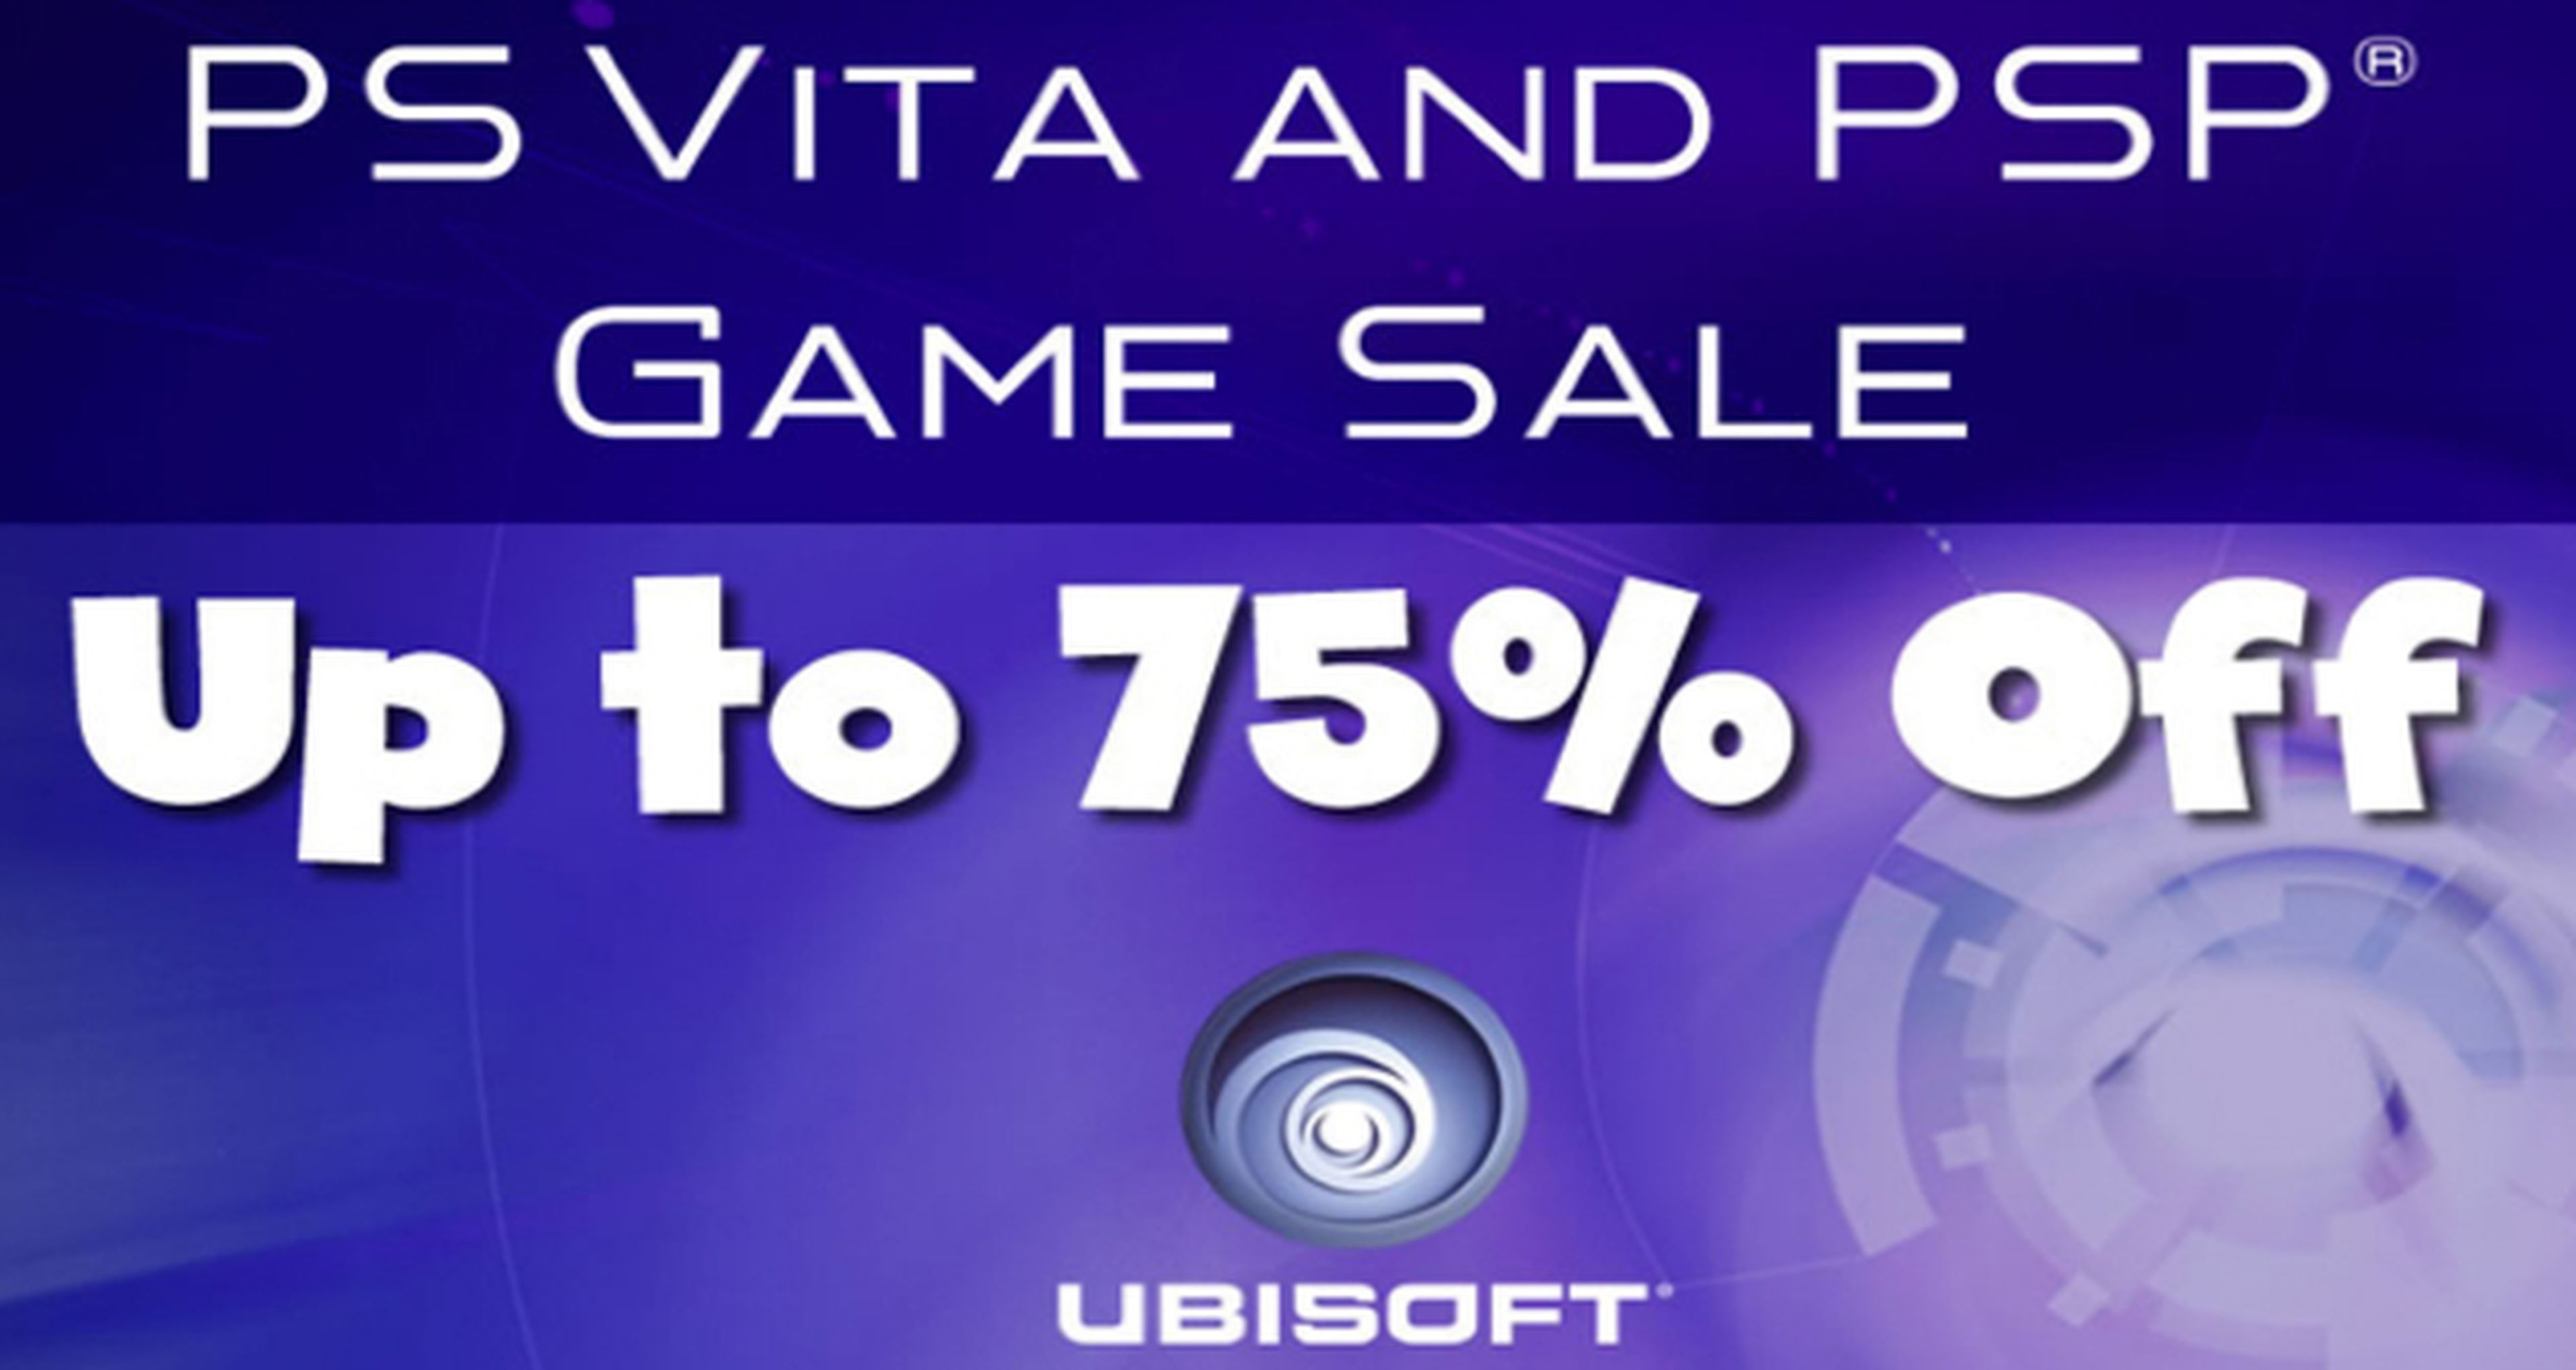 Ubisoft de rebajas en juegos para PSP y PS Vita